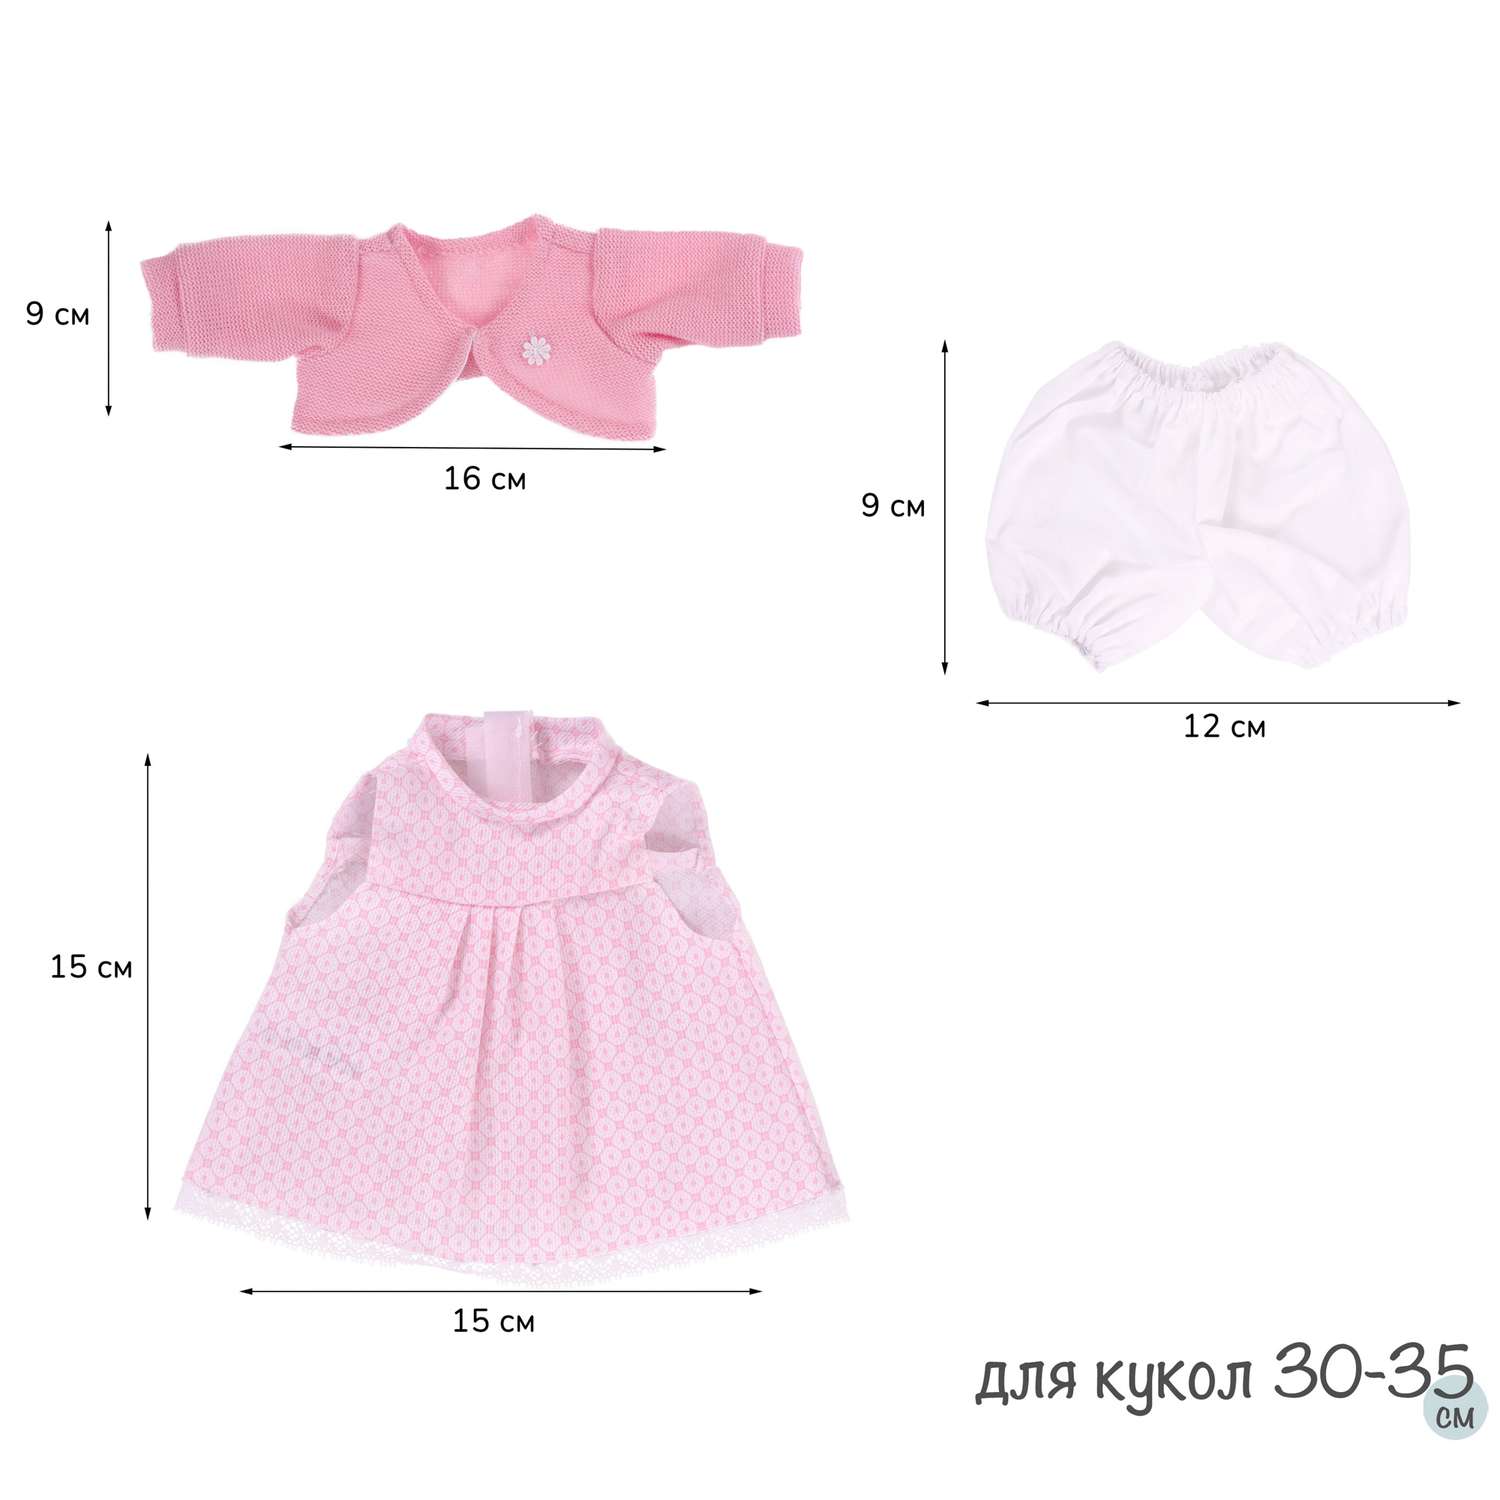 Одежда для кукол и пупсов Antonio Juan 30 - 35 см платье болеро розовое трусики 91033-21 - фото 10